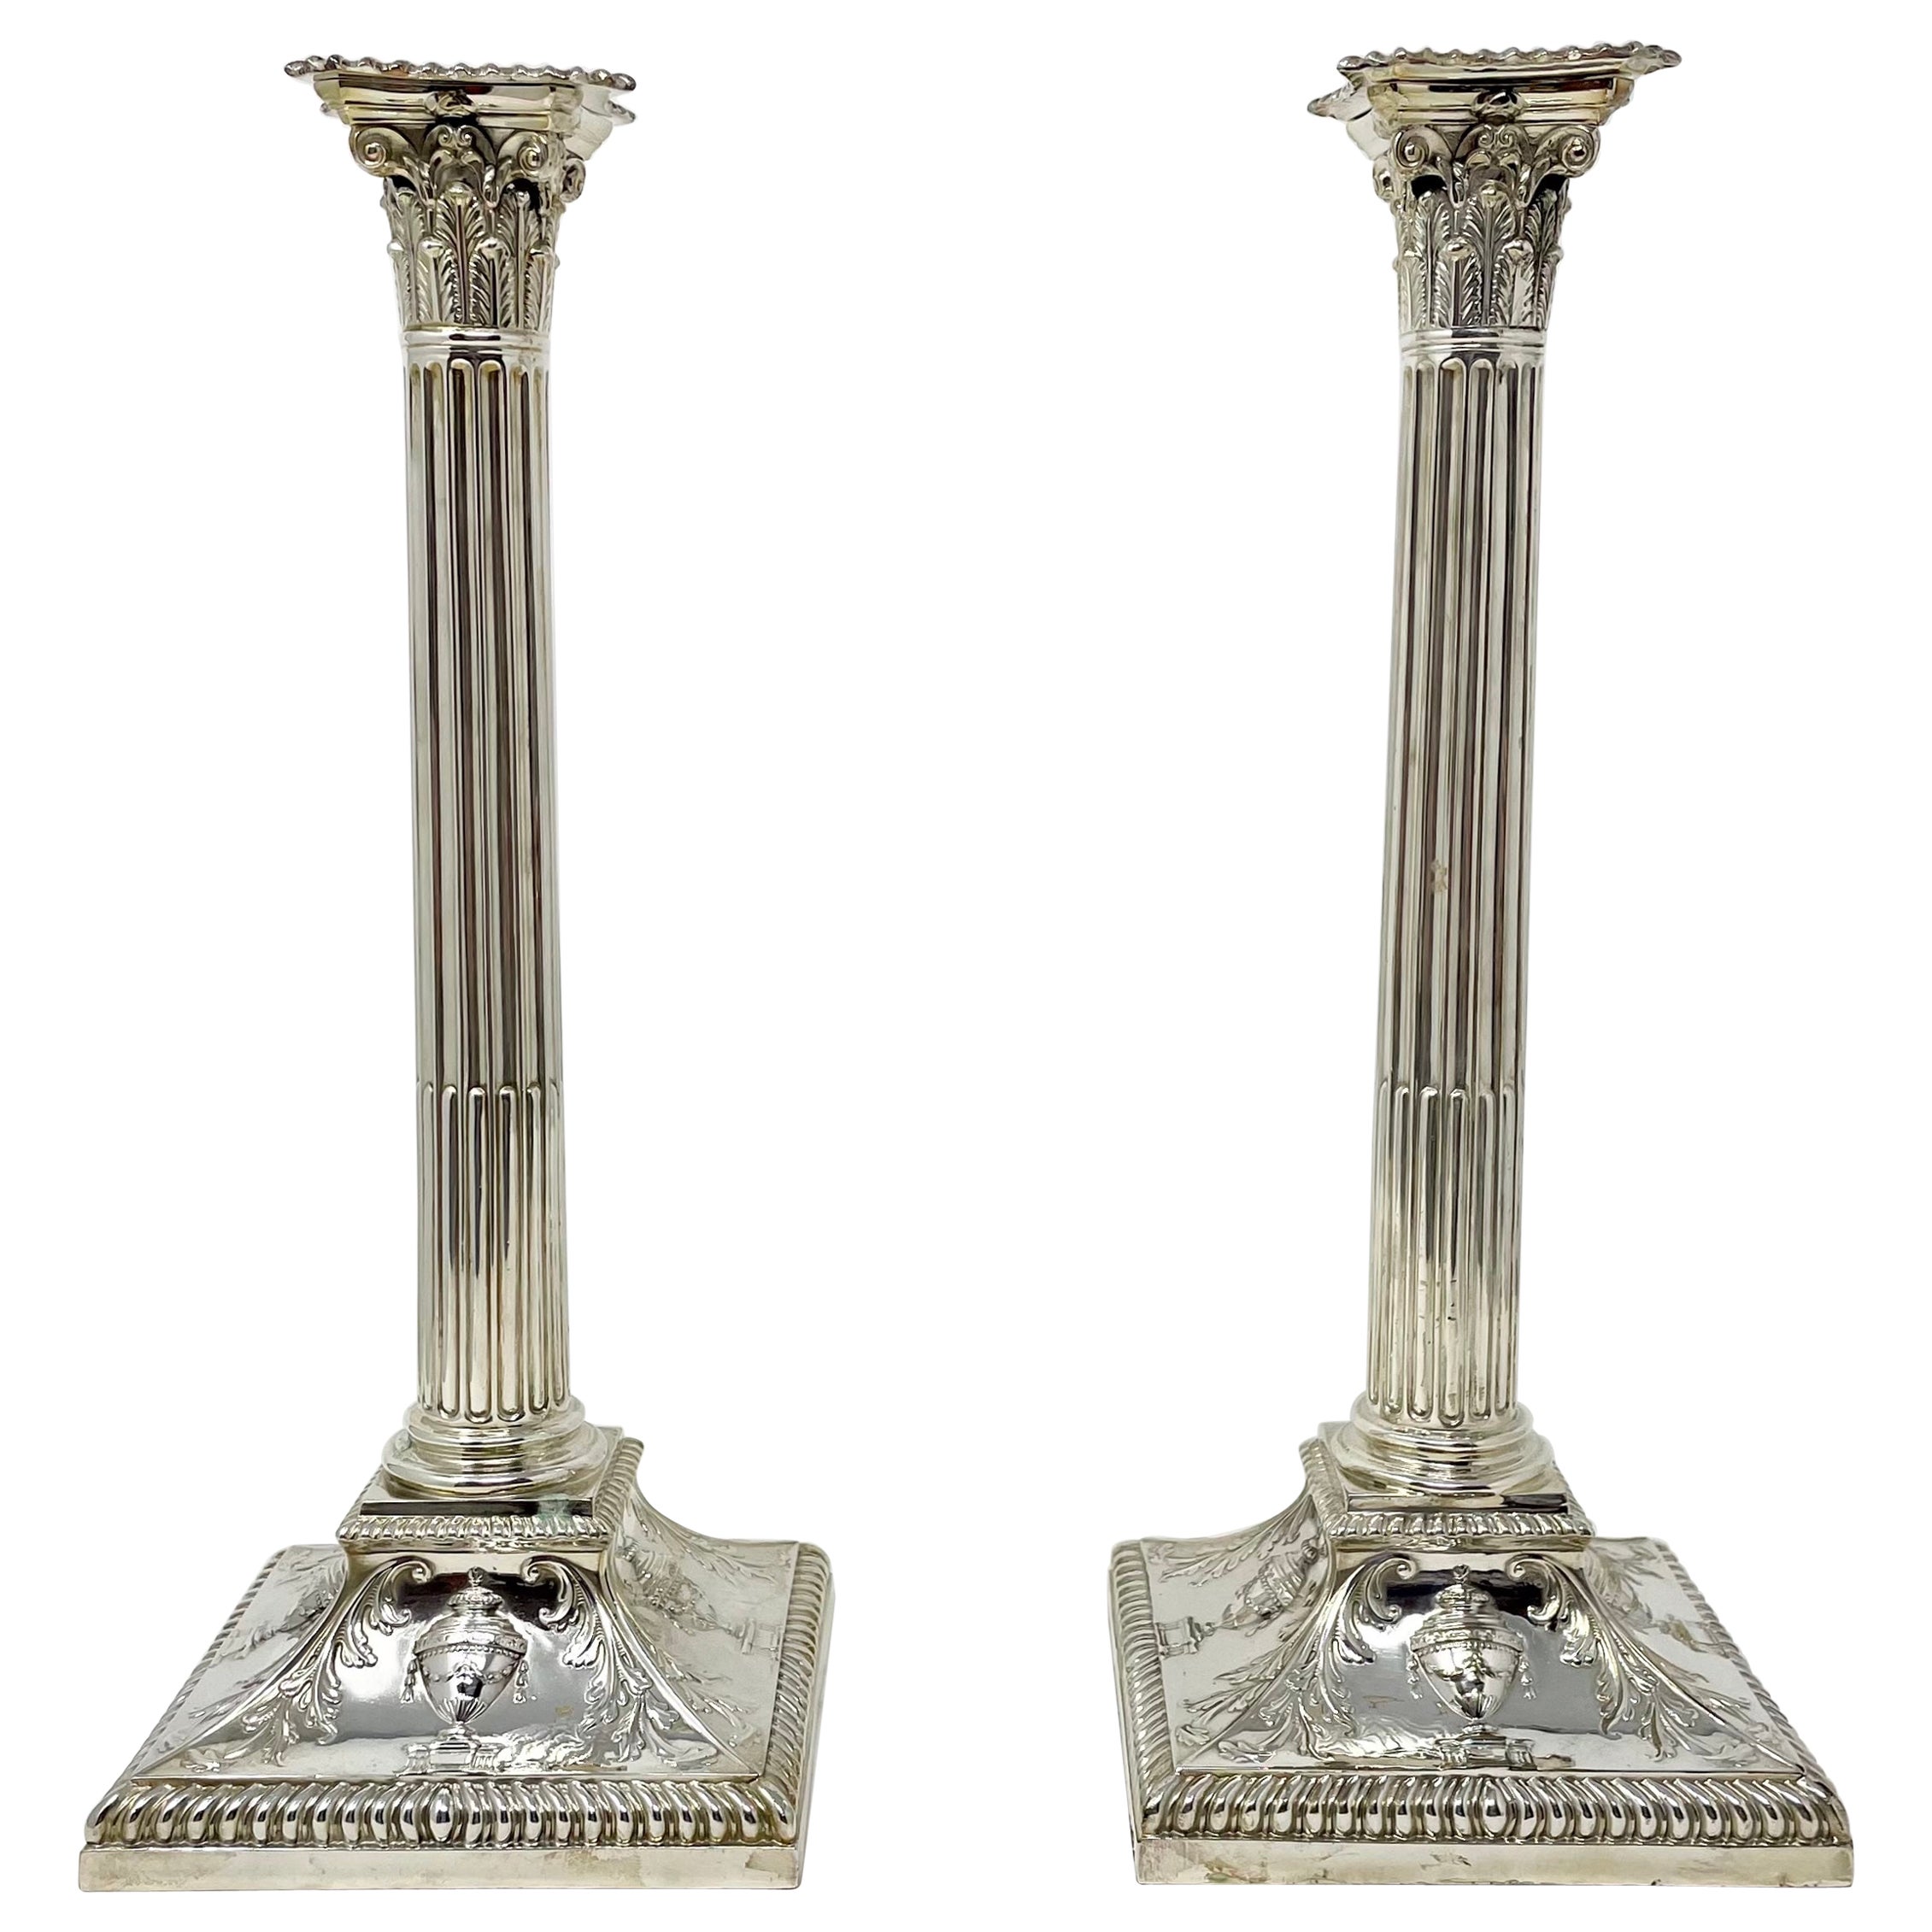 Paire de chandeliers édouardiens anglais anciens en métal argenté, vers 1900